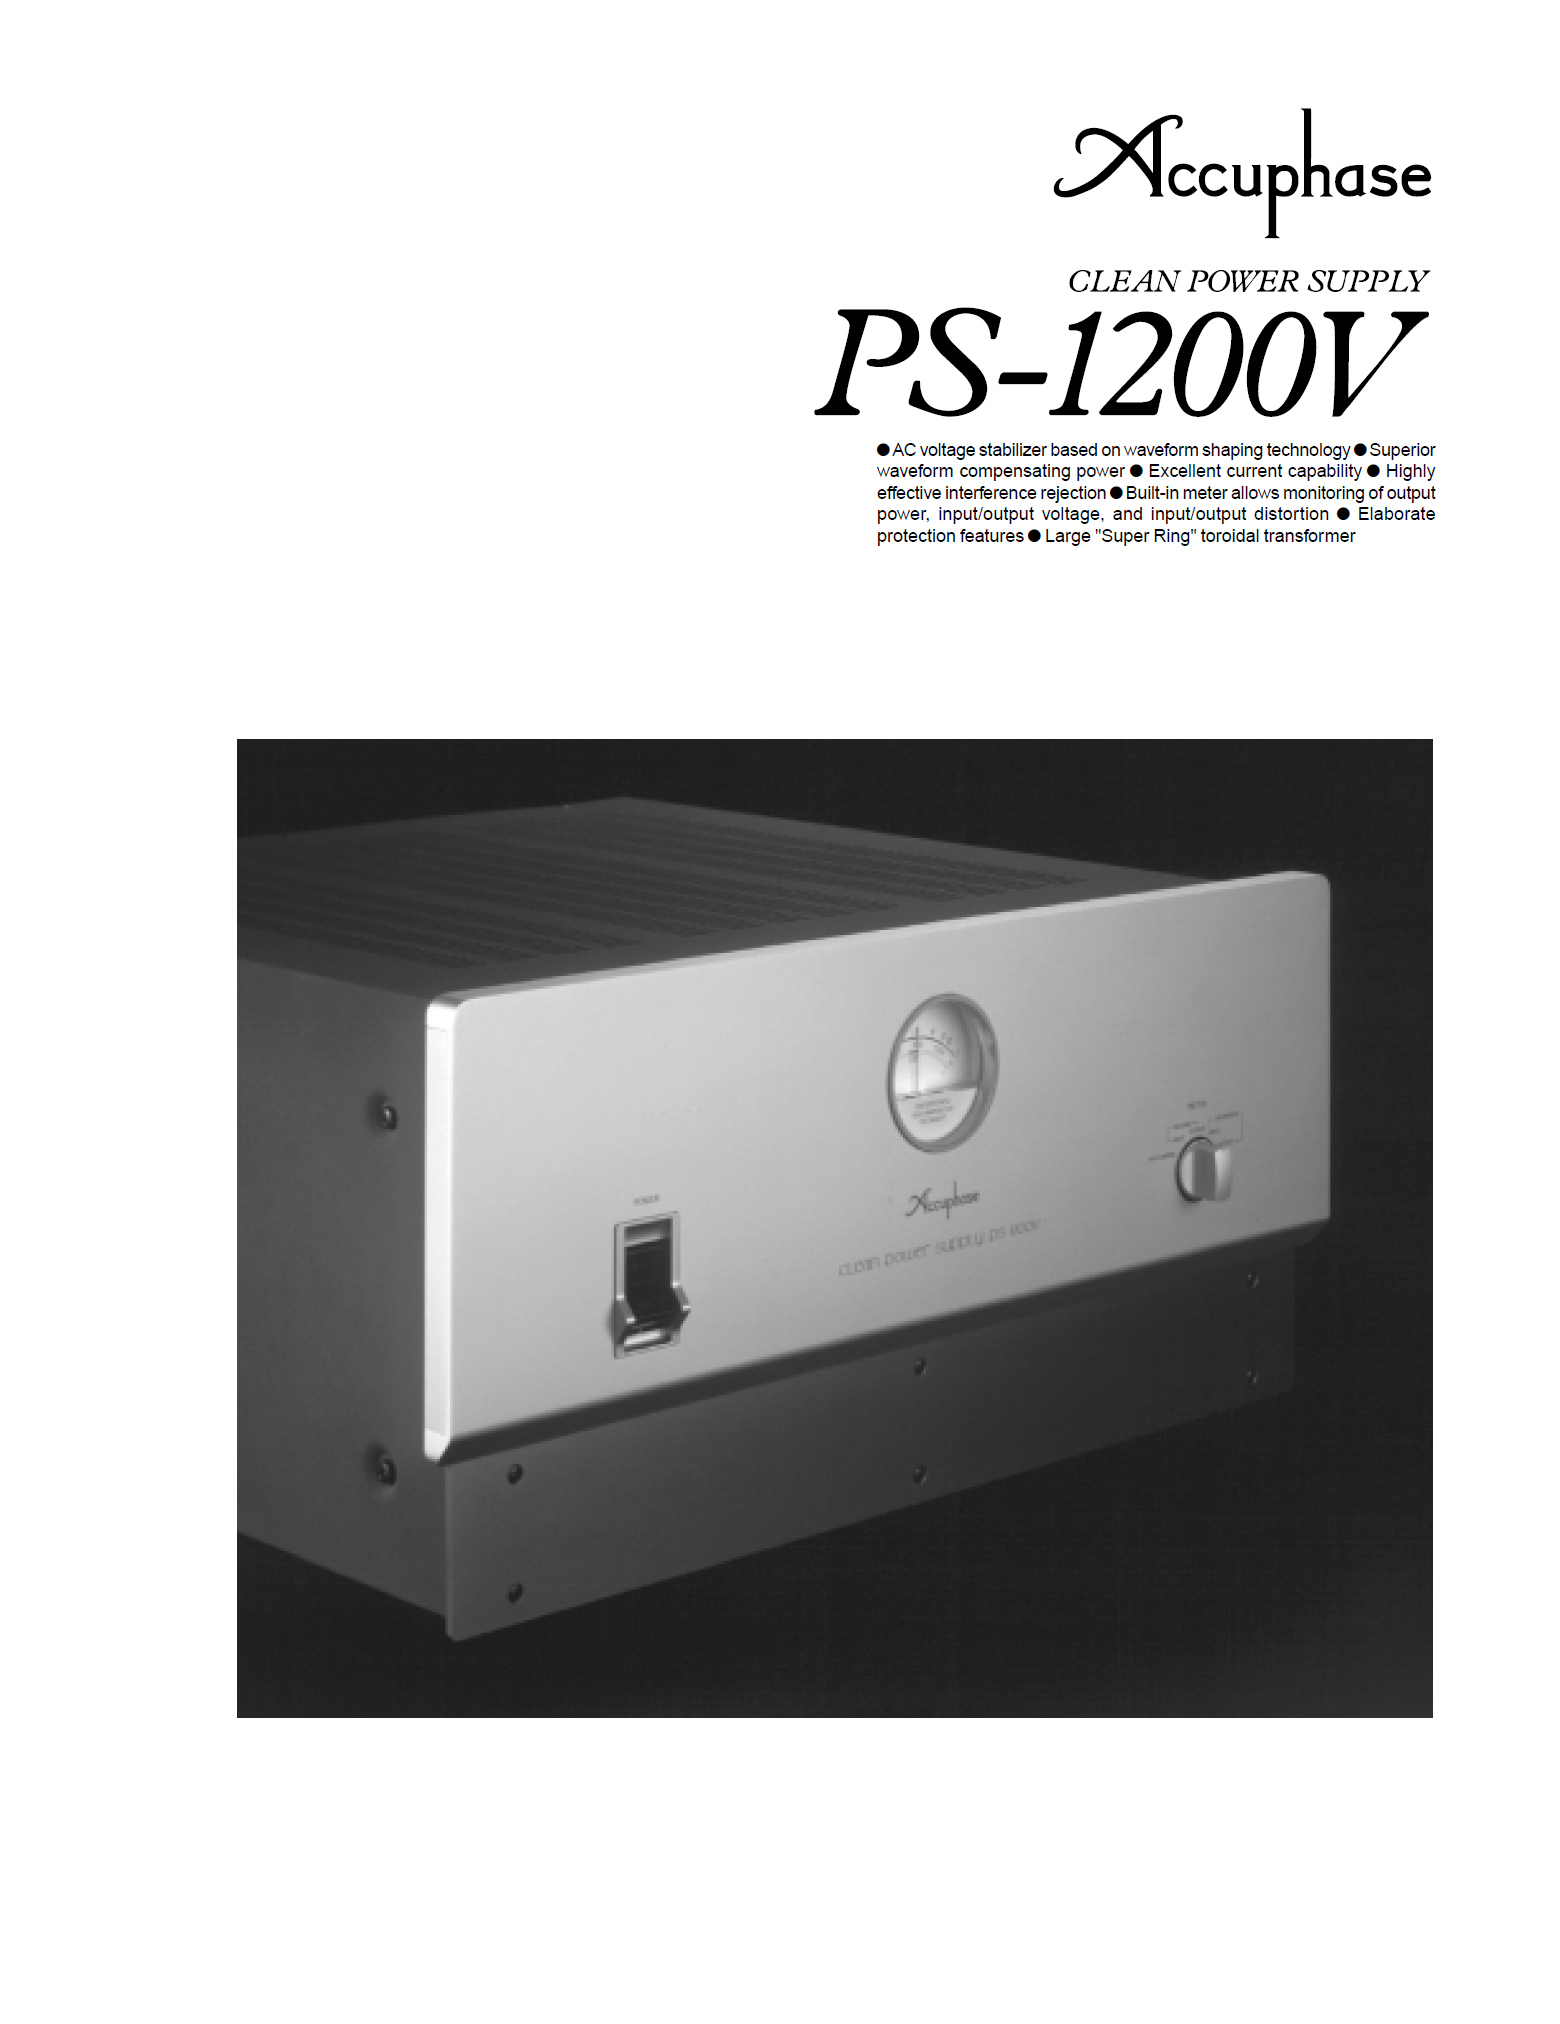 Accuphase PS-1200 V-Prospekt-1.jpg